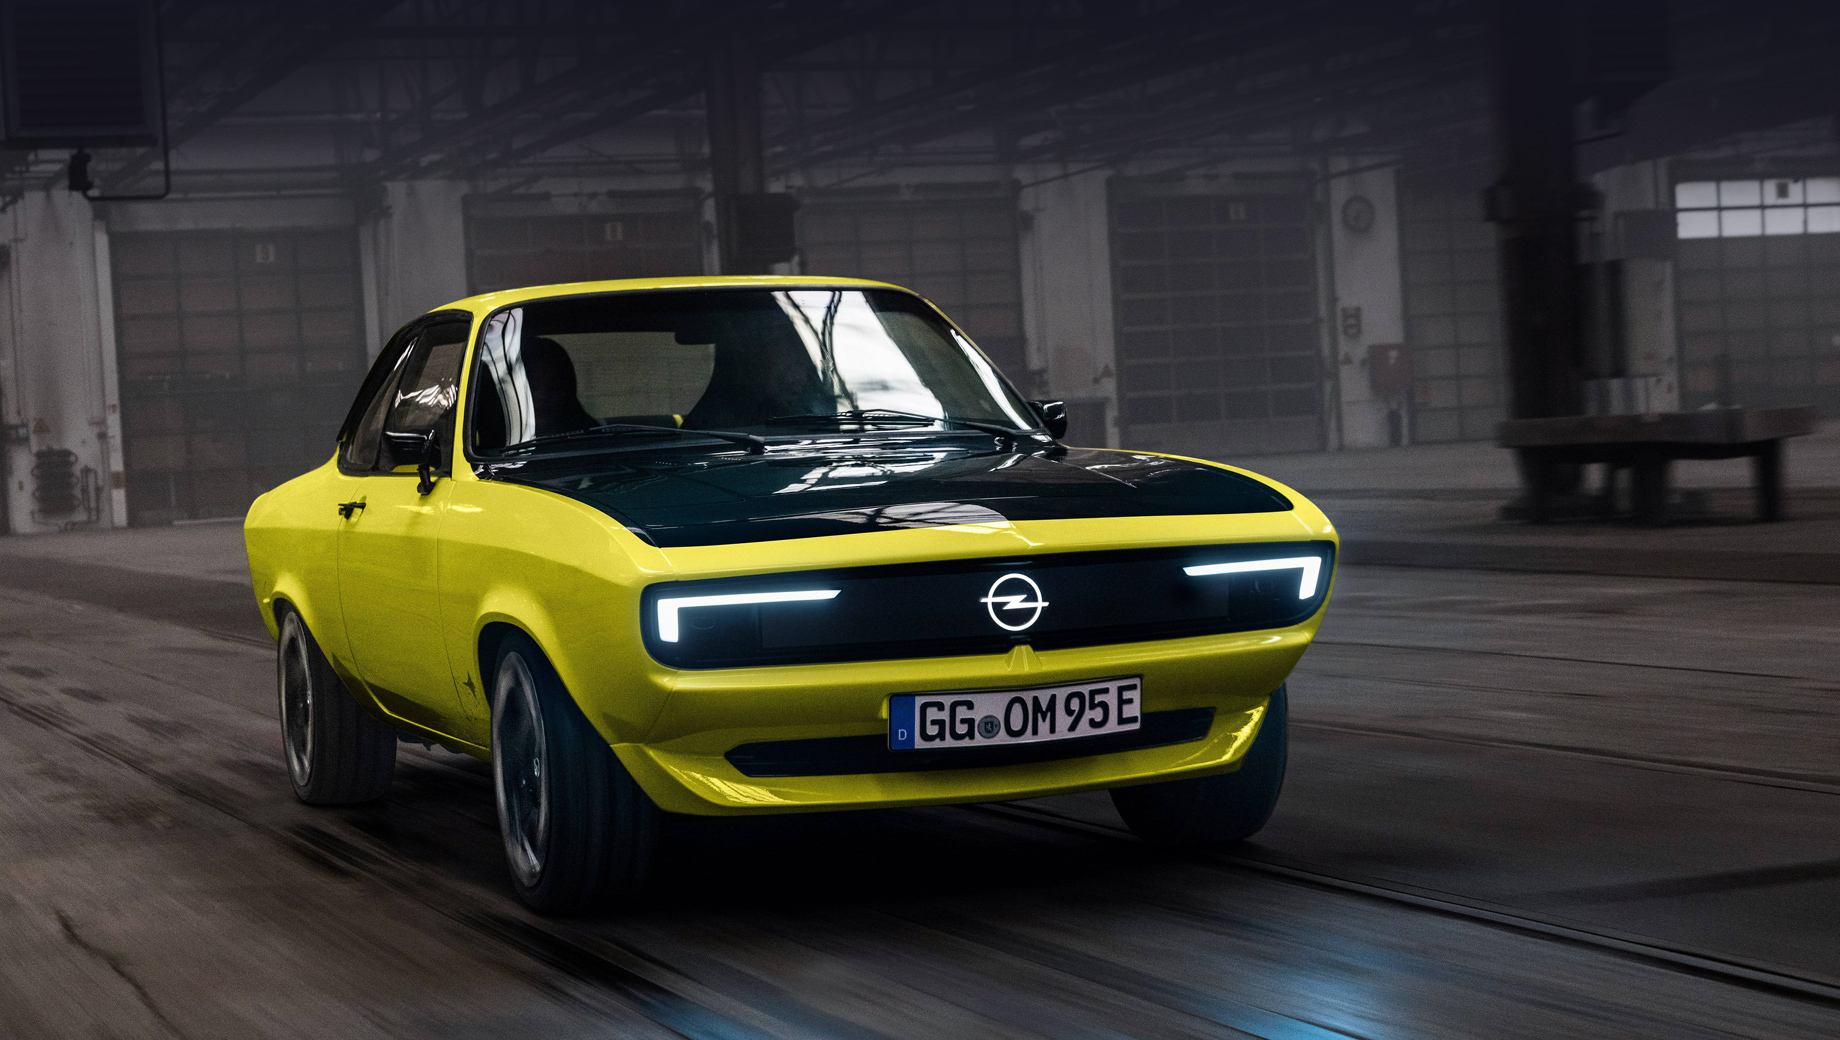 Opel manta,Opel manta gse elektromod. В перекроенной двухдверке не сразу узнаешь основу почти полувековой давности. Нос получил оформление Opel Vizor в стиле современных Опелей (к слову, вдохновлённых как раз Мантой А), а между фарами протянулся дисплей Pixel-Vizor.